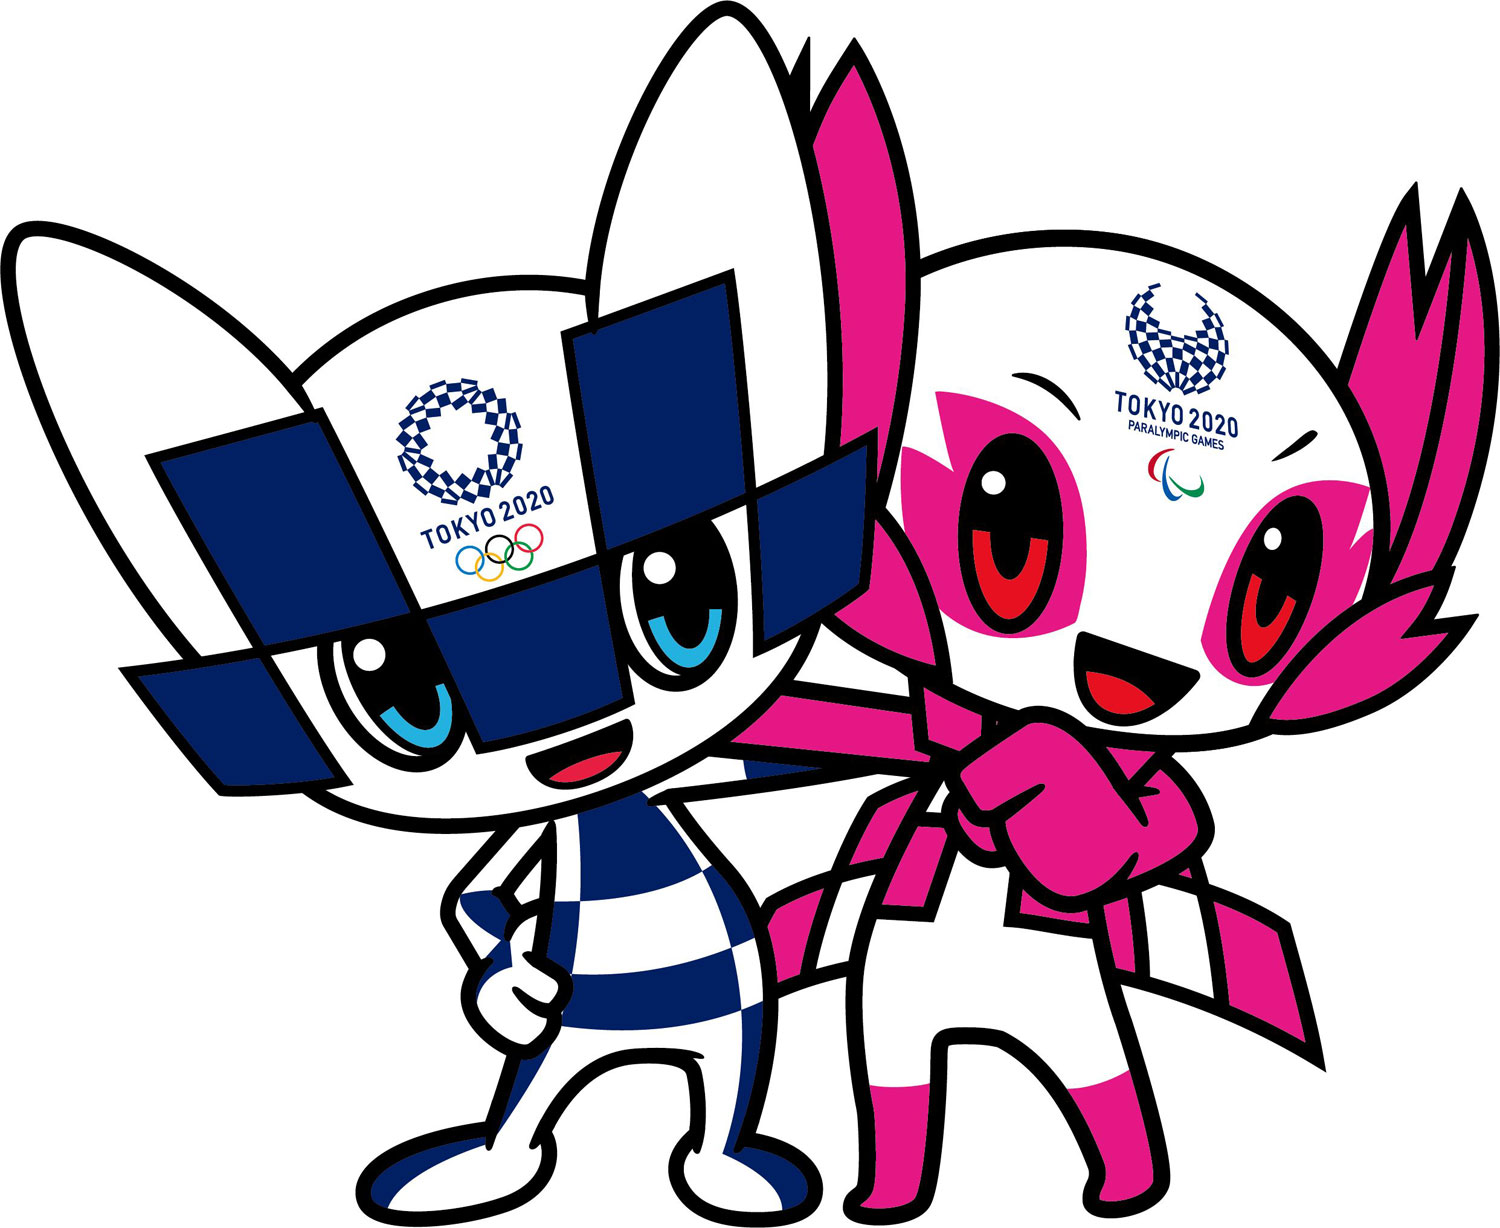 Miraitowa (l.) und Someity sind die digitalen Botschafter der Spiele 2020. Copyright: Tokyo2020